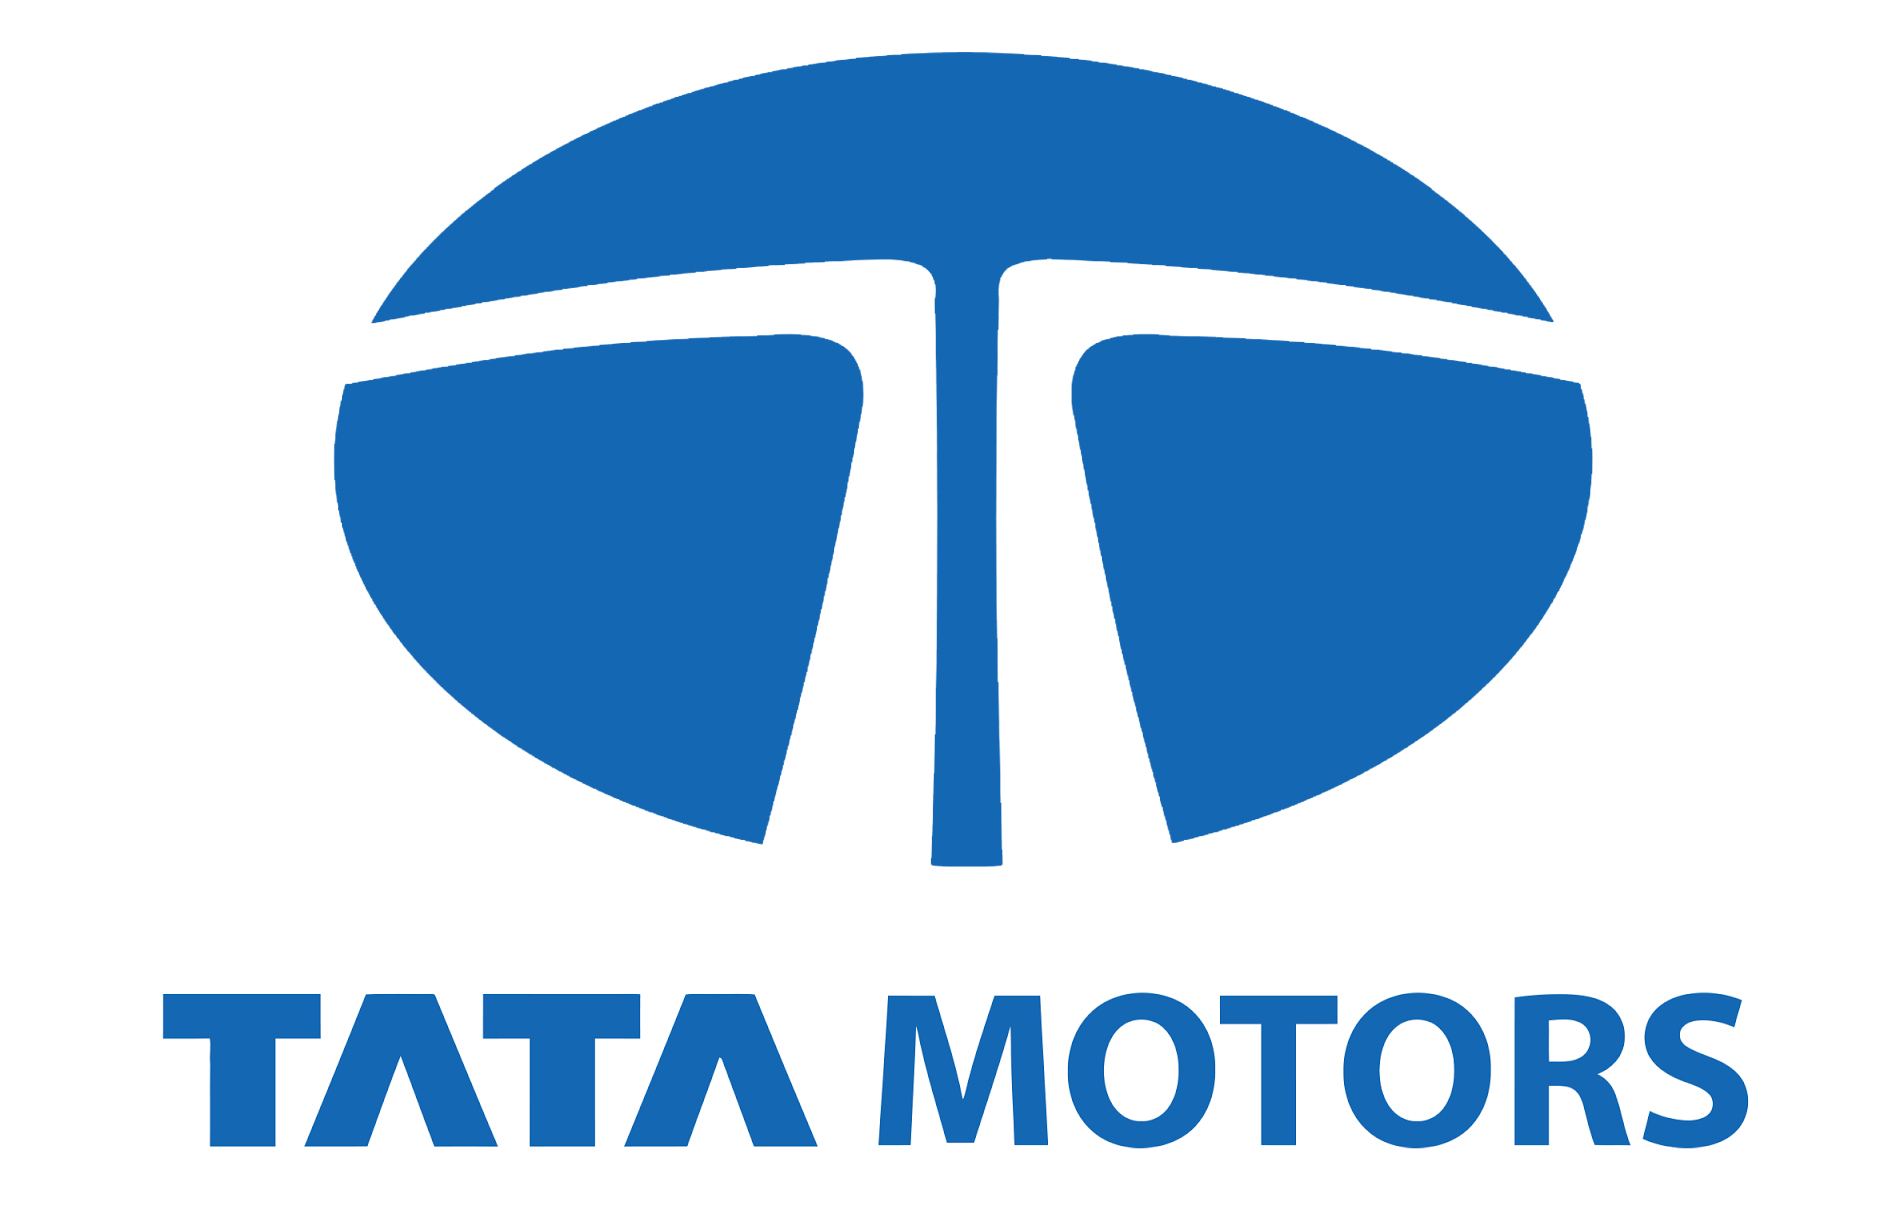 Tata Motors Cars Service Centre - Society Motors|Show Room|Automotive